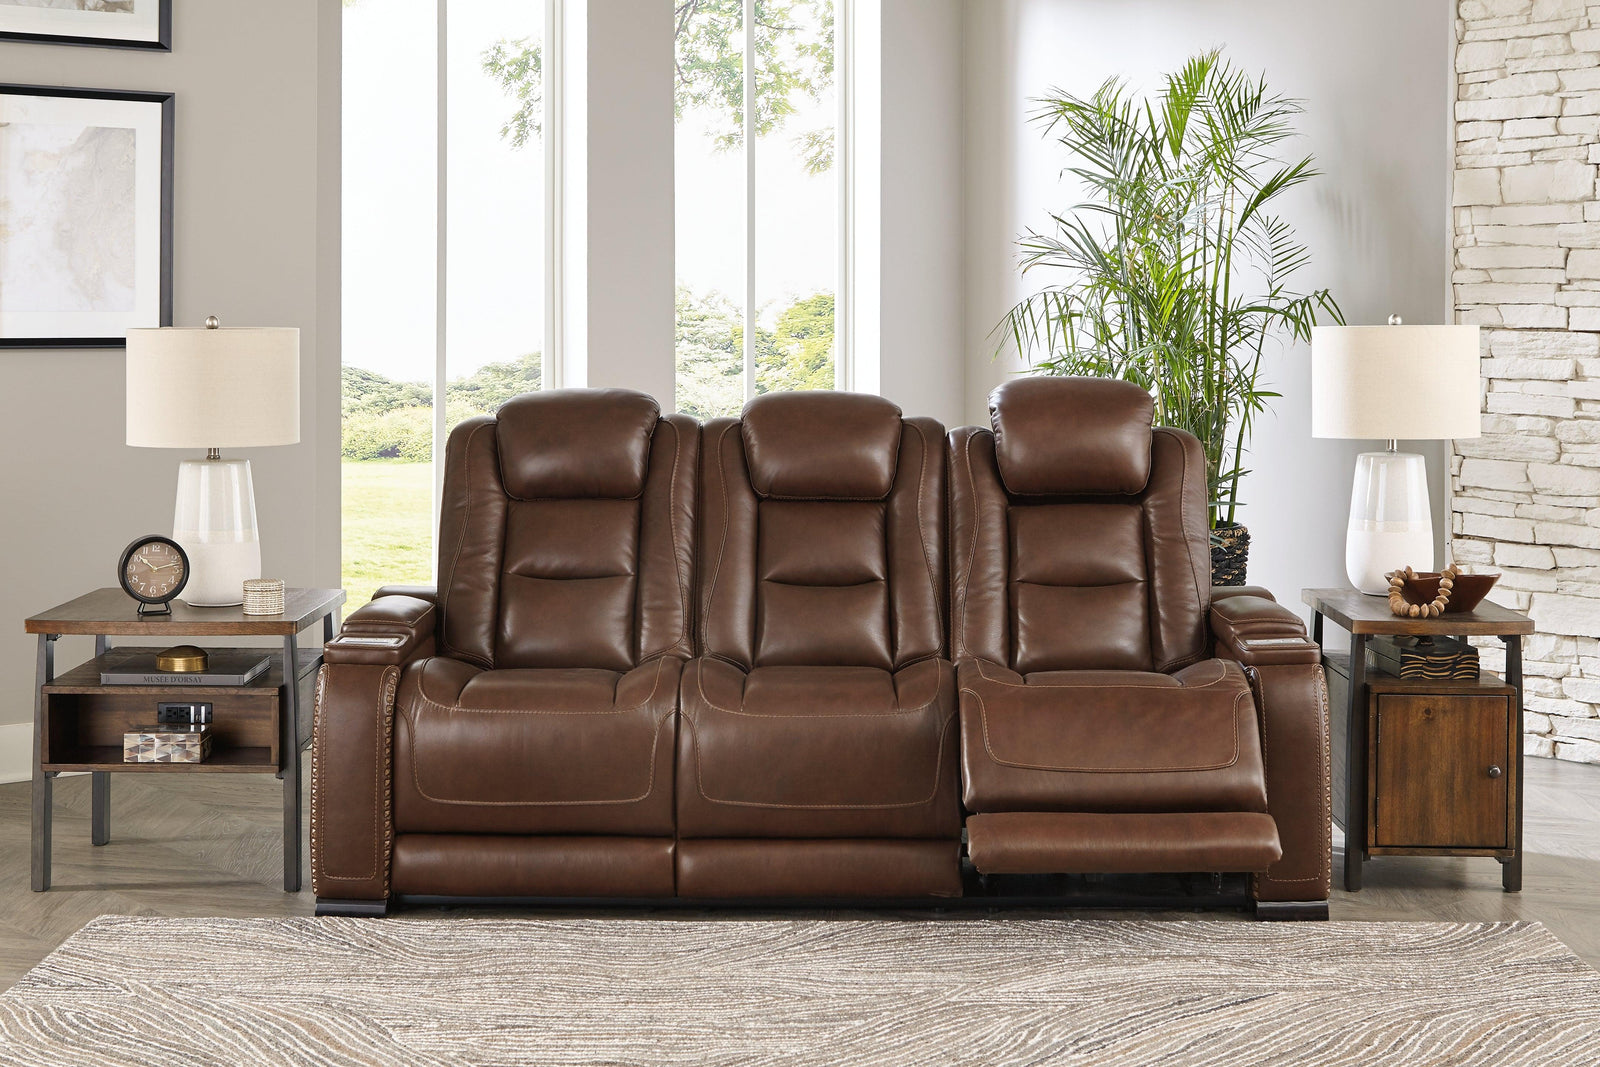 The Man-den Mahogany Leather Power Reclining Sofa